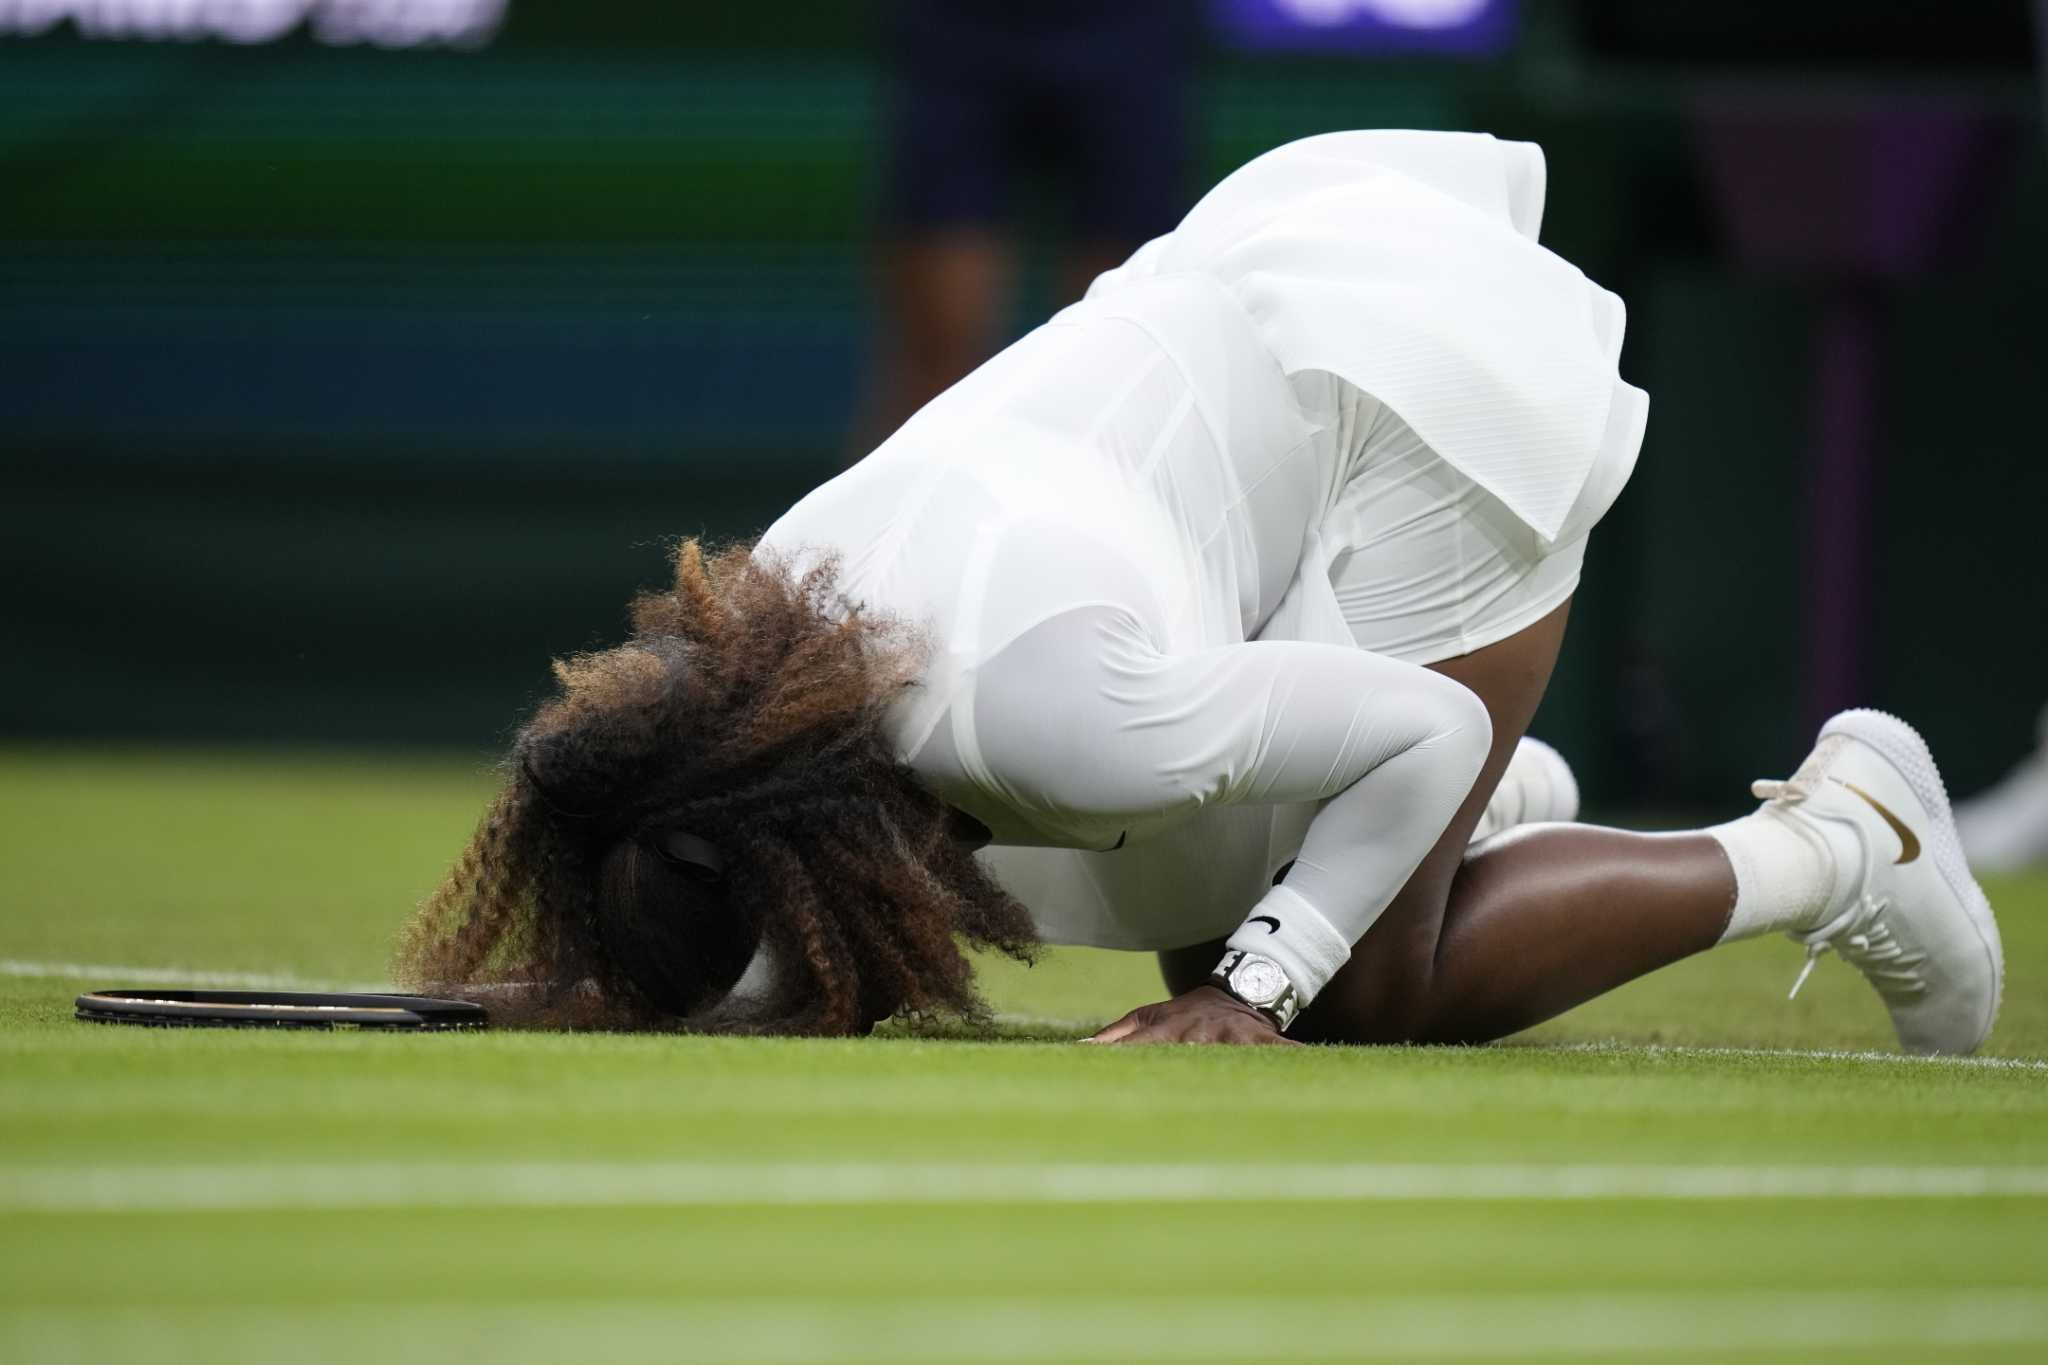  Țiriac continuă războiul cu Serena: Vine un moment în care te prinde vârsta din urmă